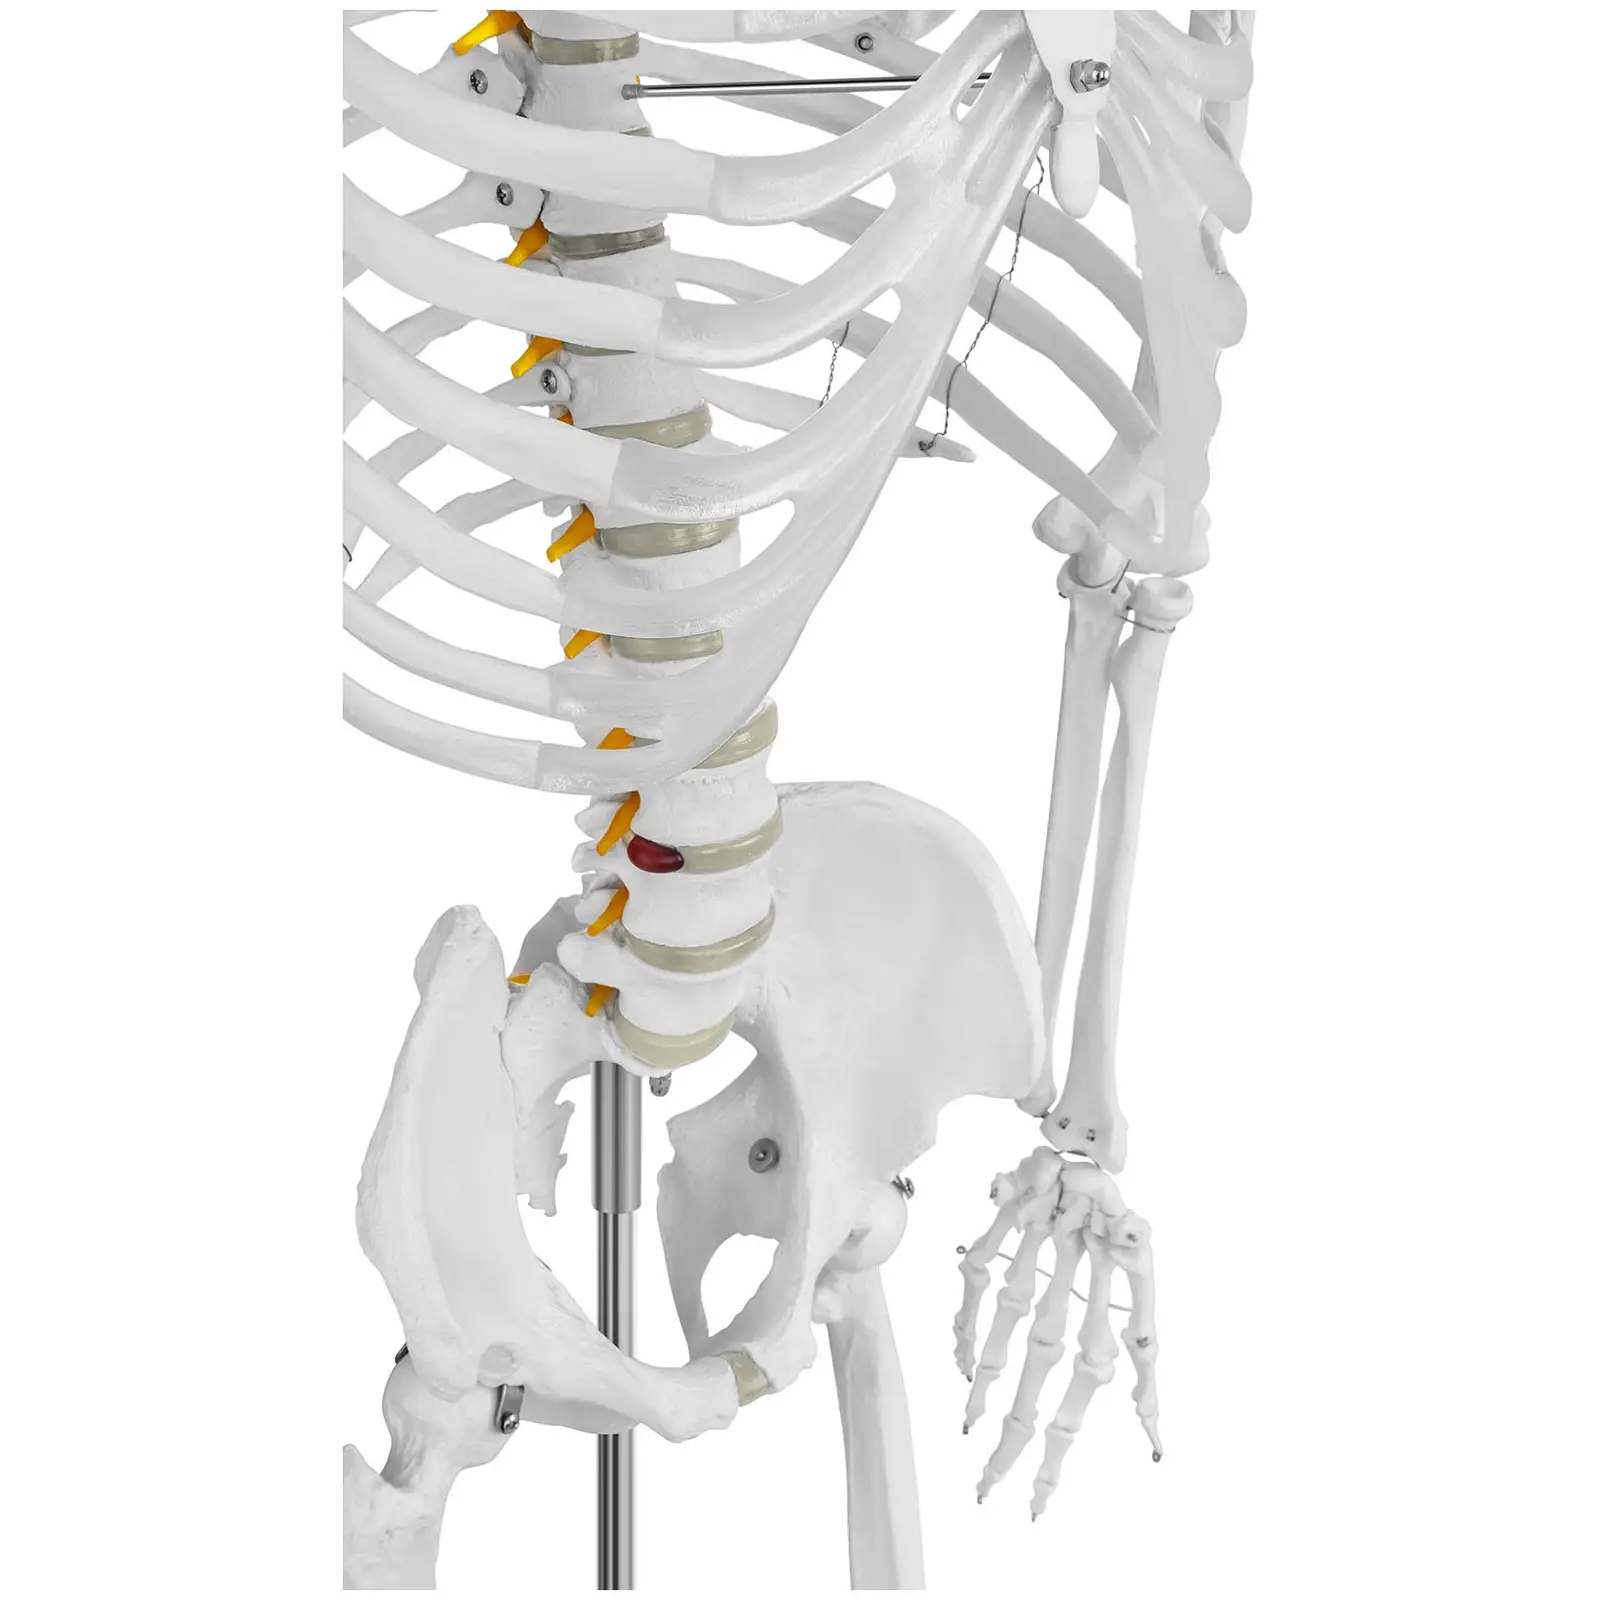 Modello scheletro umano - A grandezza naturale - 4